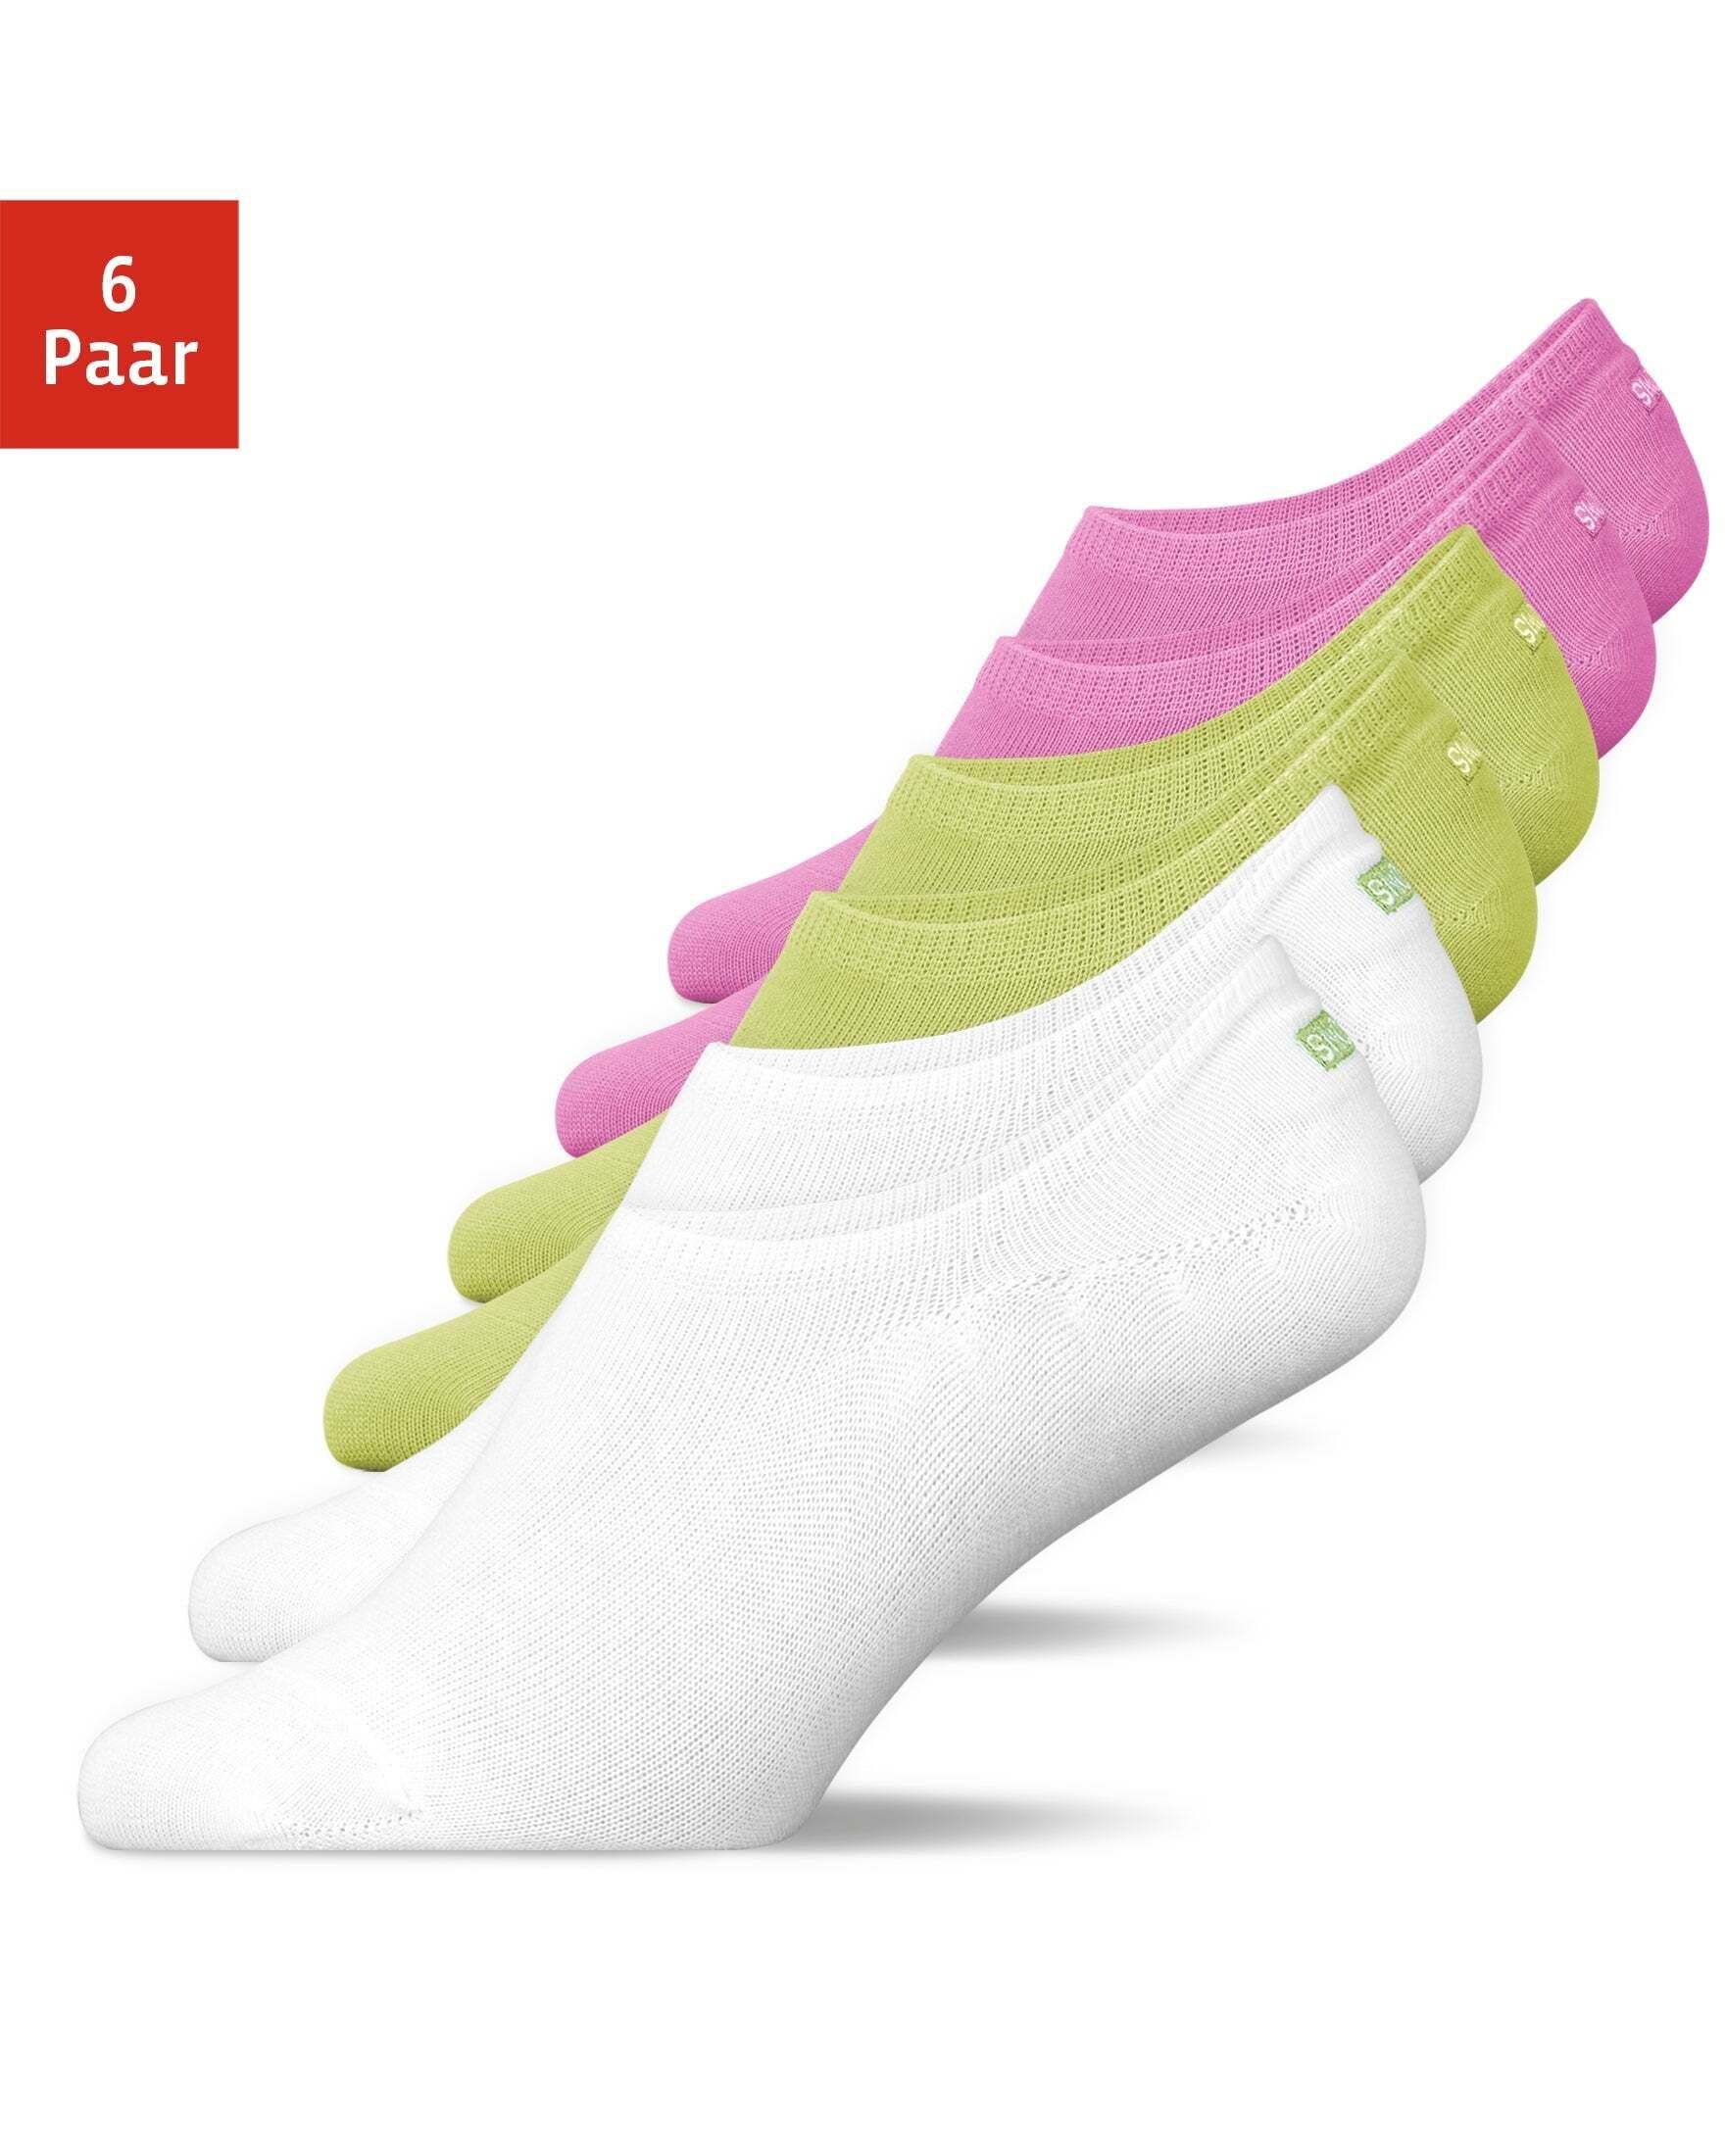 SNOCKS Füßlinge Invisible Socks Sneaker Шкарпетки Damen & Herren (6-Paar) aus Bio-Baumwolle, mit Anti-Rutsch-Pad und unsichtbar in den Schuhen